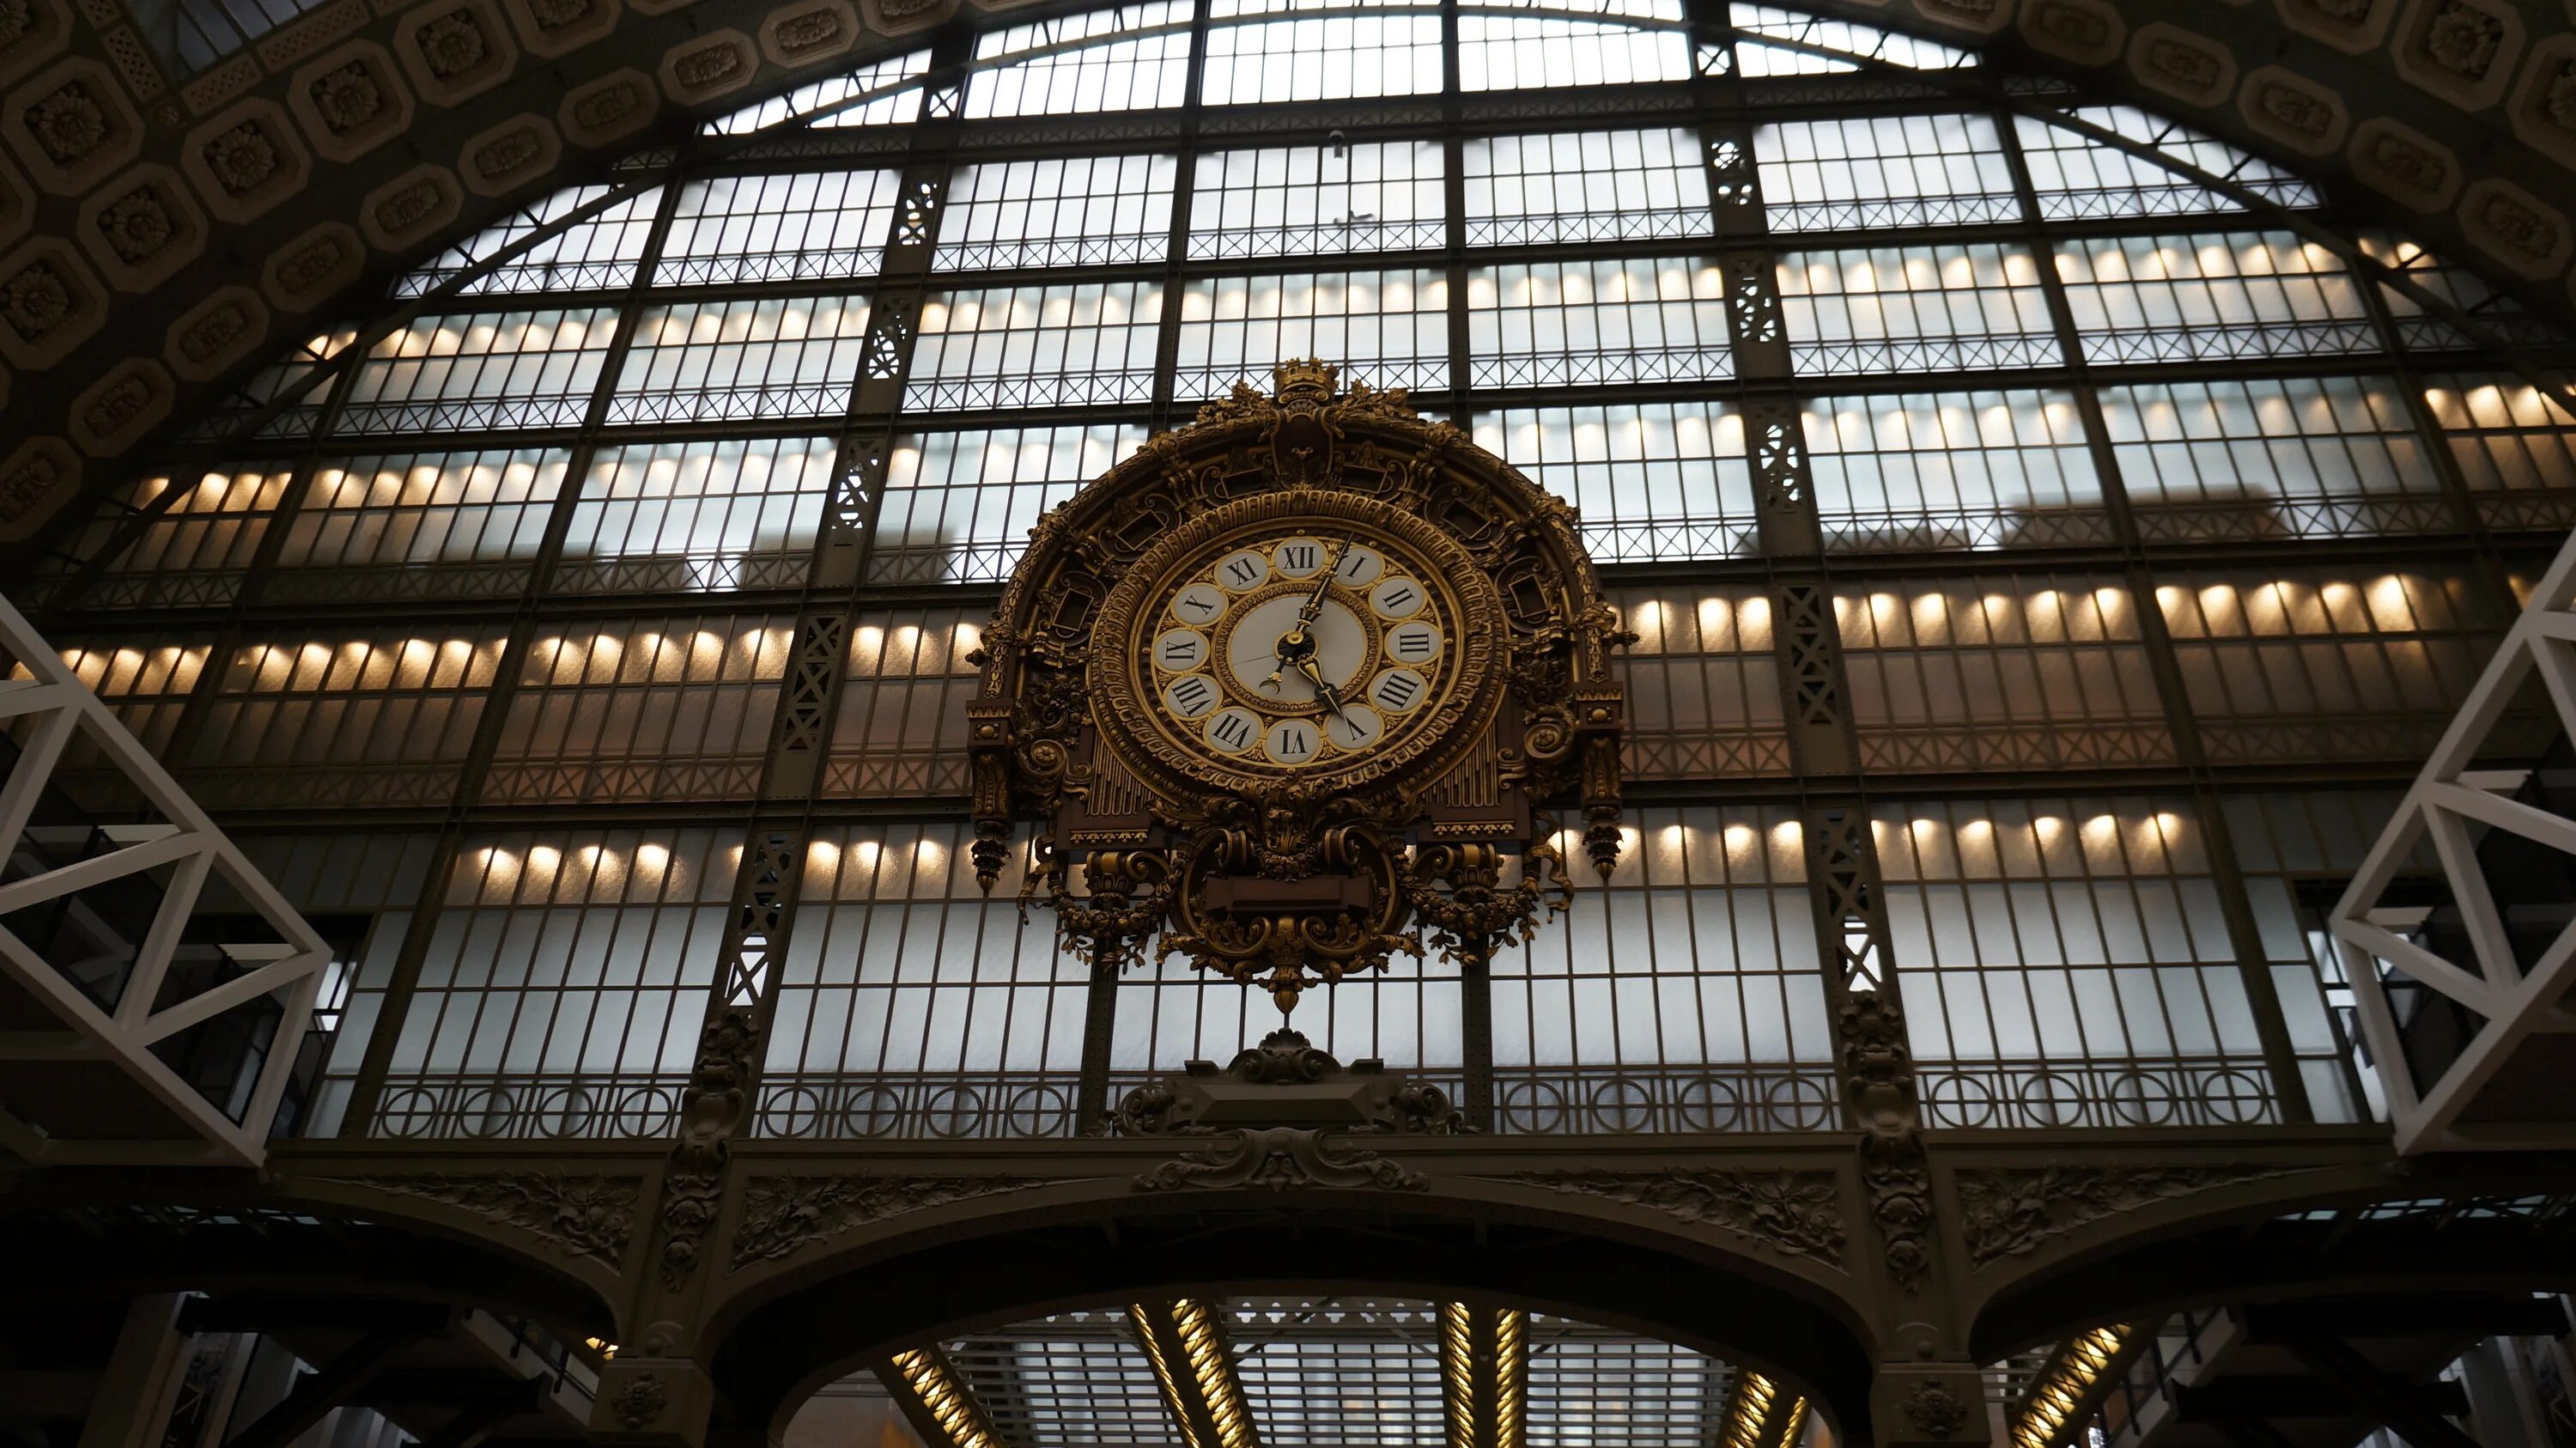 Стоки часы. Часы на вокзале. Часы сочинского вокзала. Вокзал с часами. Башенные часы на вокзале.